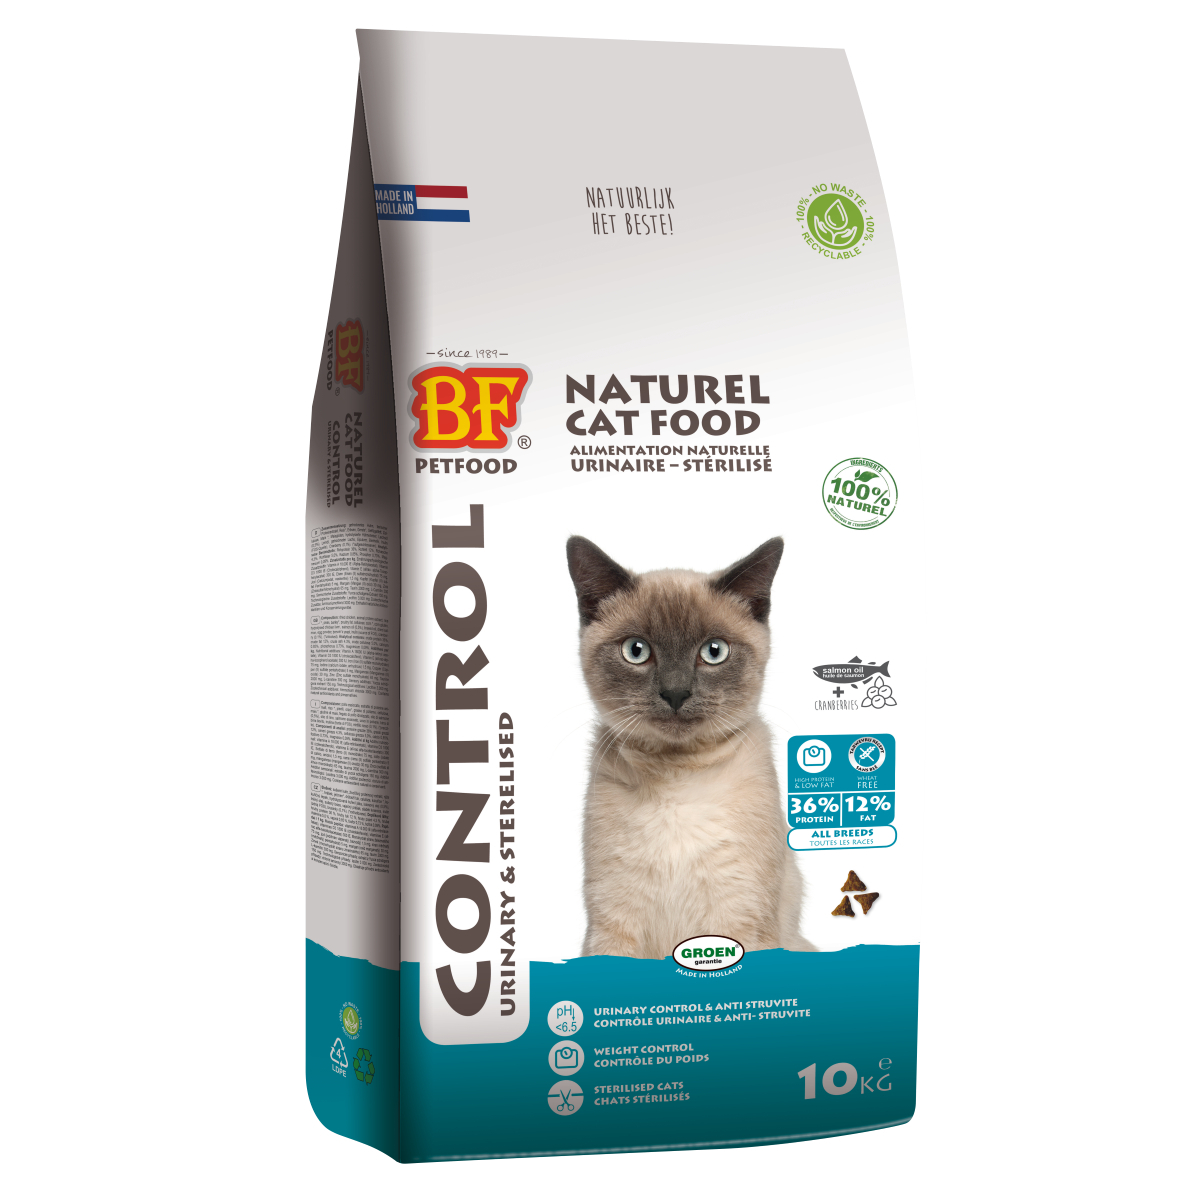 BIOFOOD Control 100% Natuurlijk kattenvoer voor volwassen gesteriliseerde katten of met overgewicht